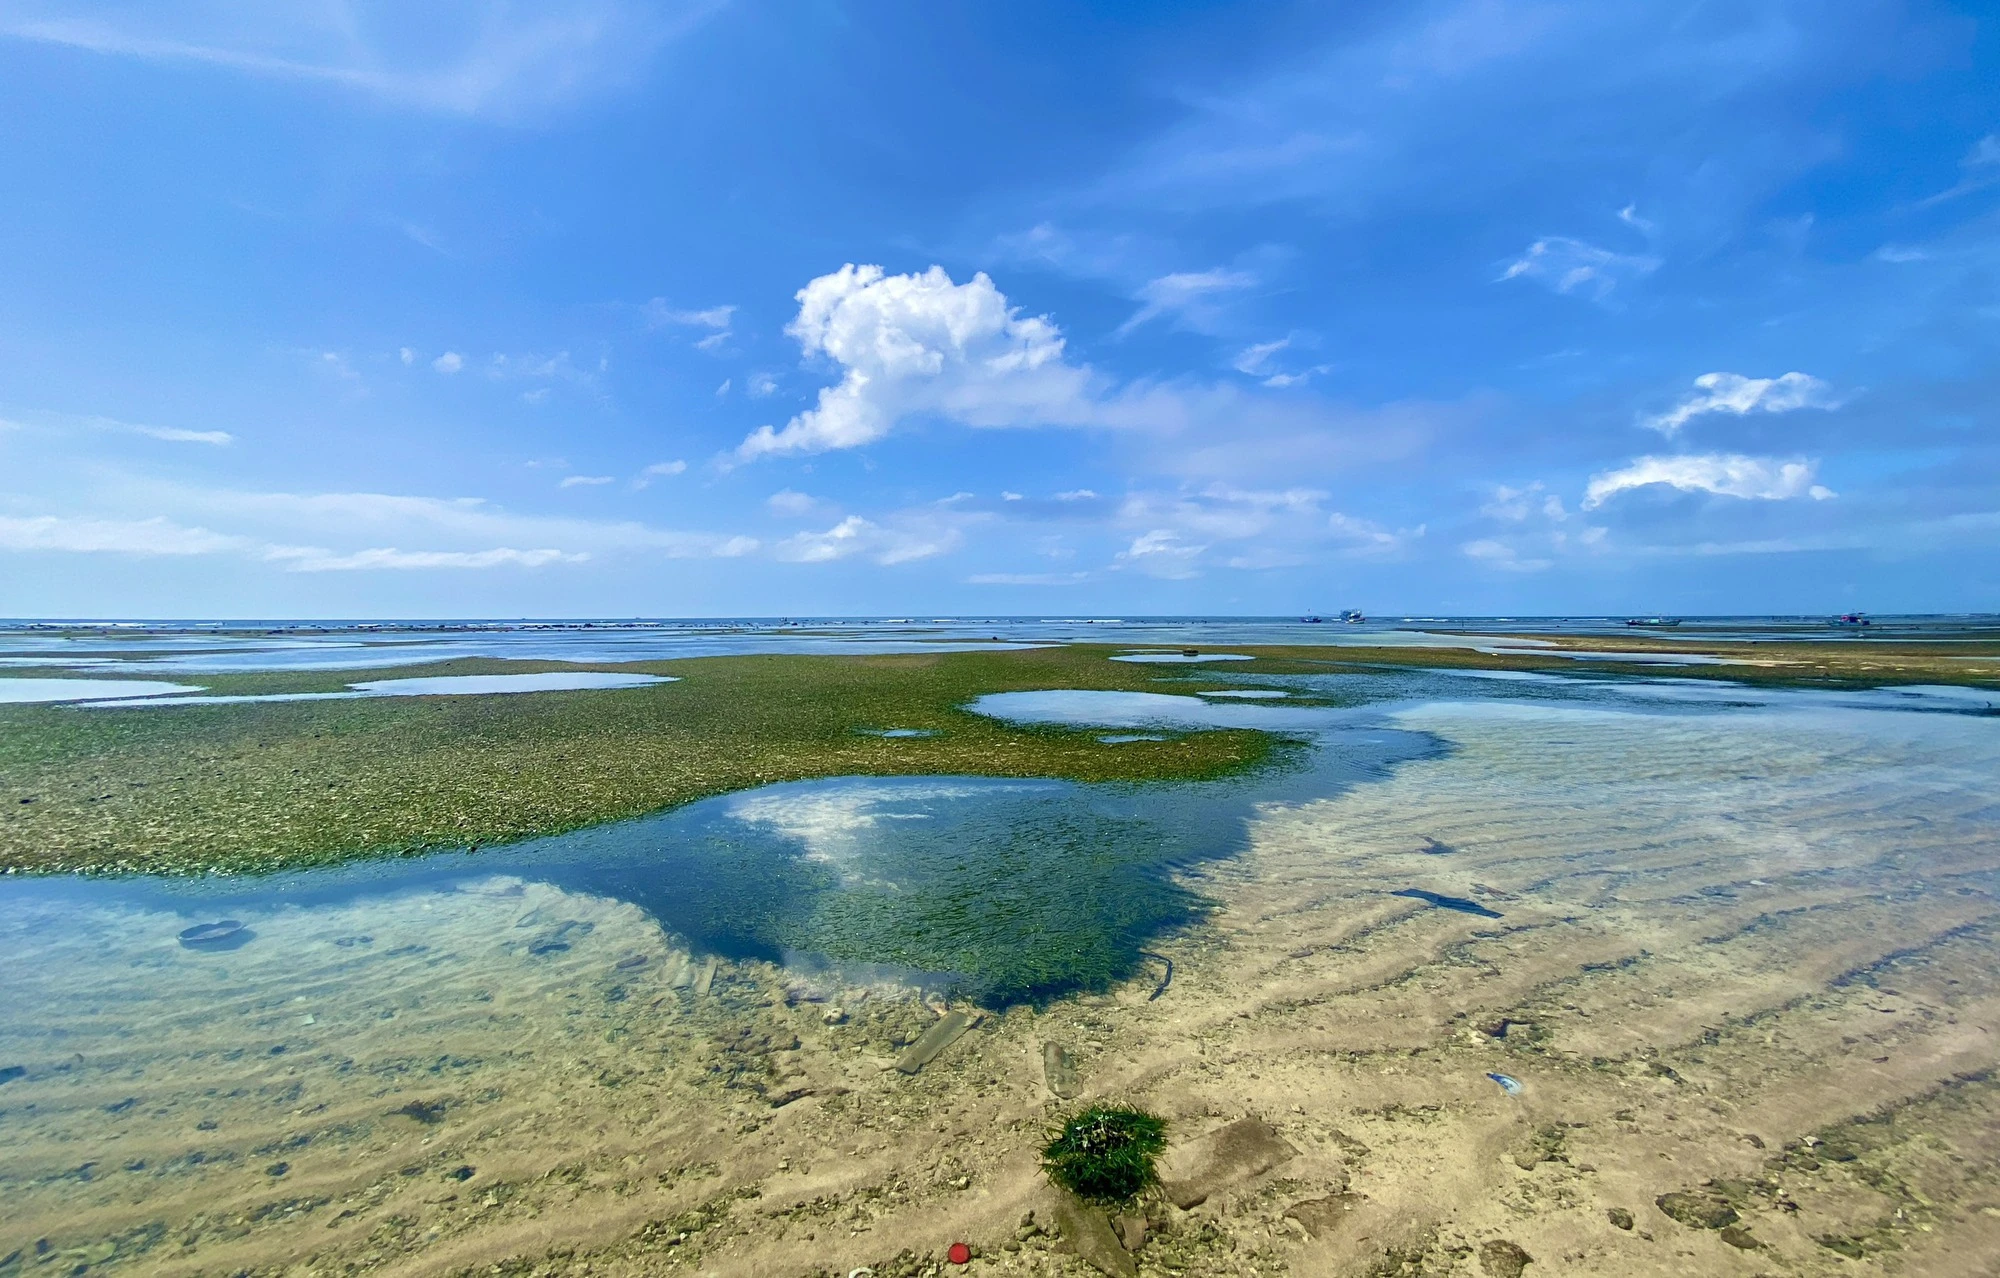 Rong mơ lá hẹ mọc ở gần bờ trên đảo Lý Sơn đẹp như một bức tranh - Ảnh 9.